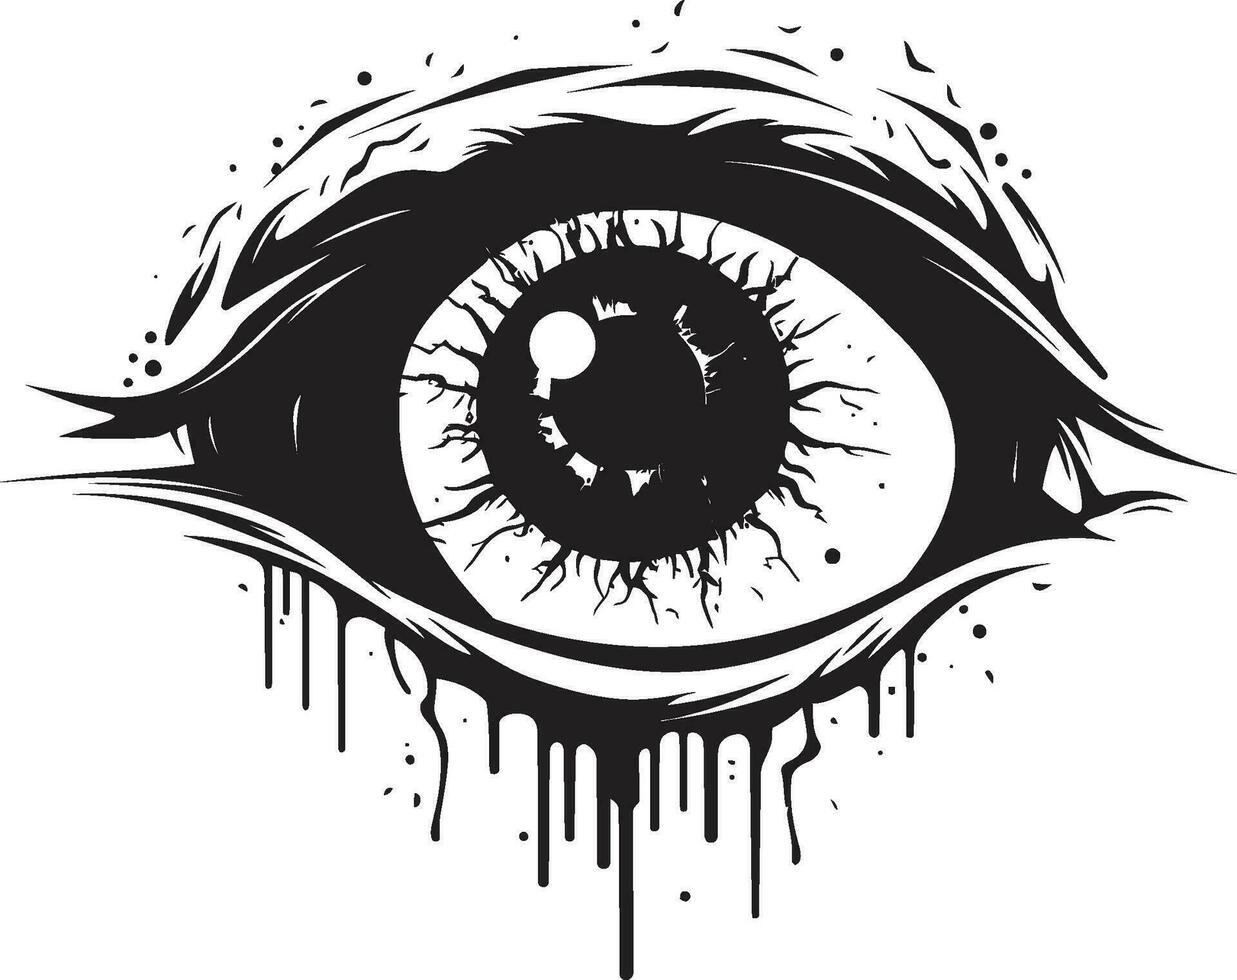 minaccioso ultraterrena occhio raccapricciante nero icona frequentato zombie Guarda vettore pauroso occhio emblema